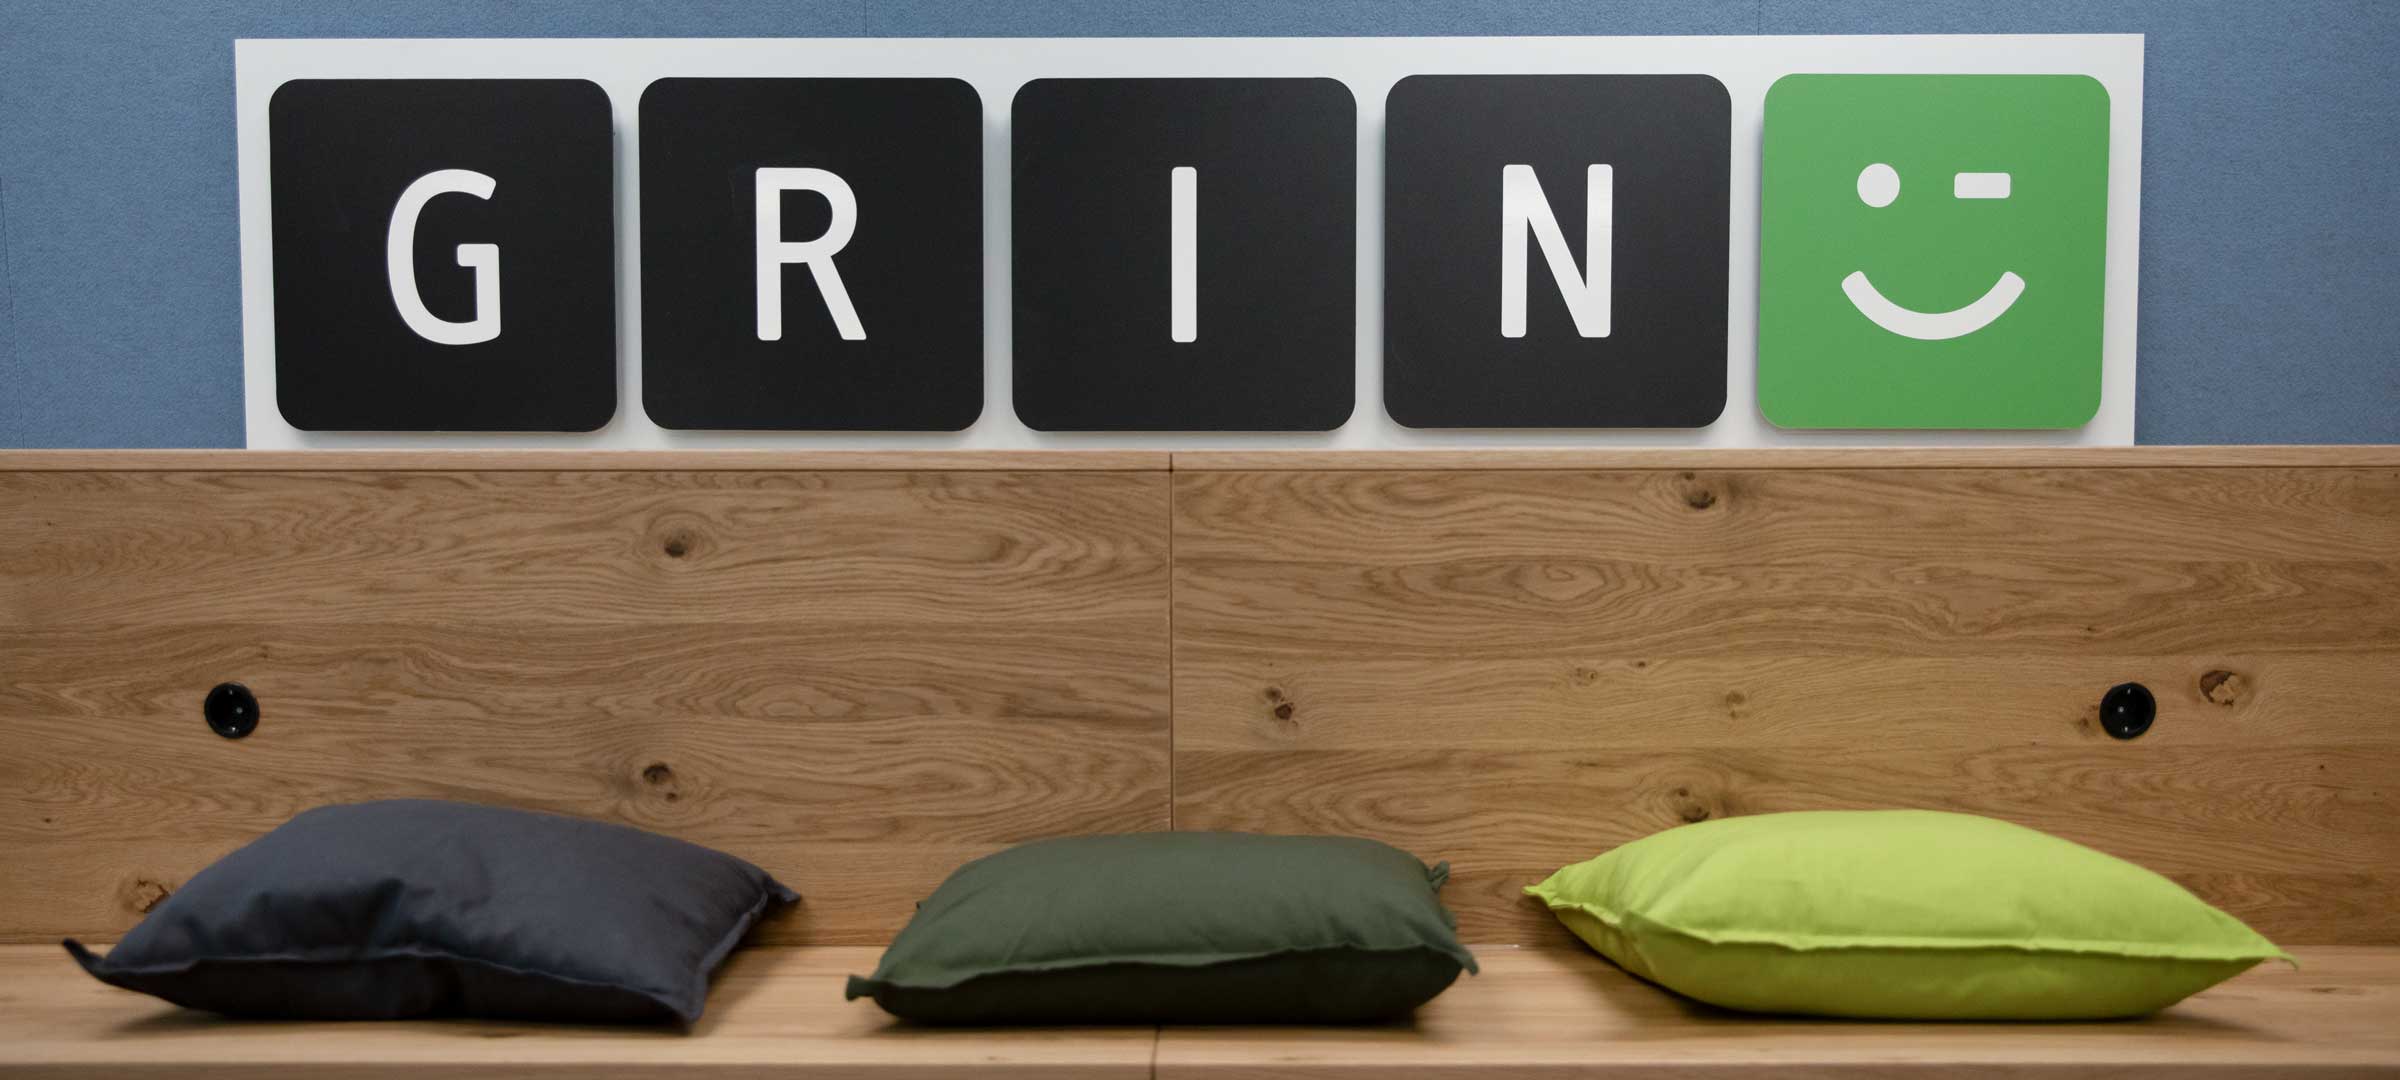 Titelbild: Sitzbereich mit Logo von GRIN